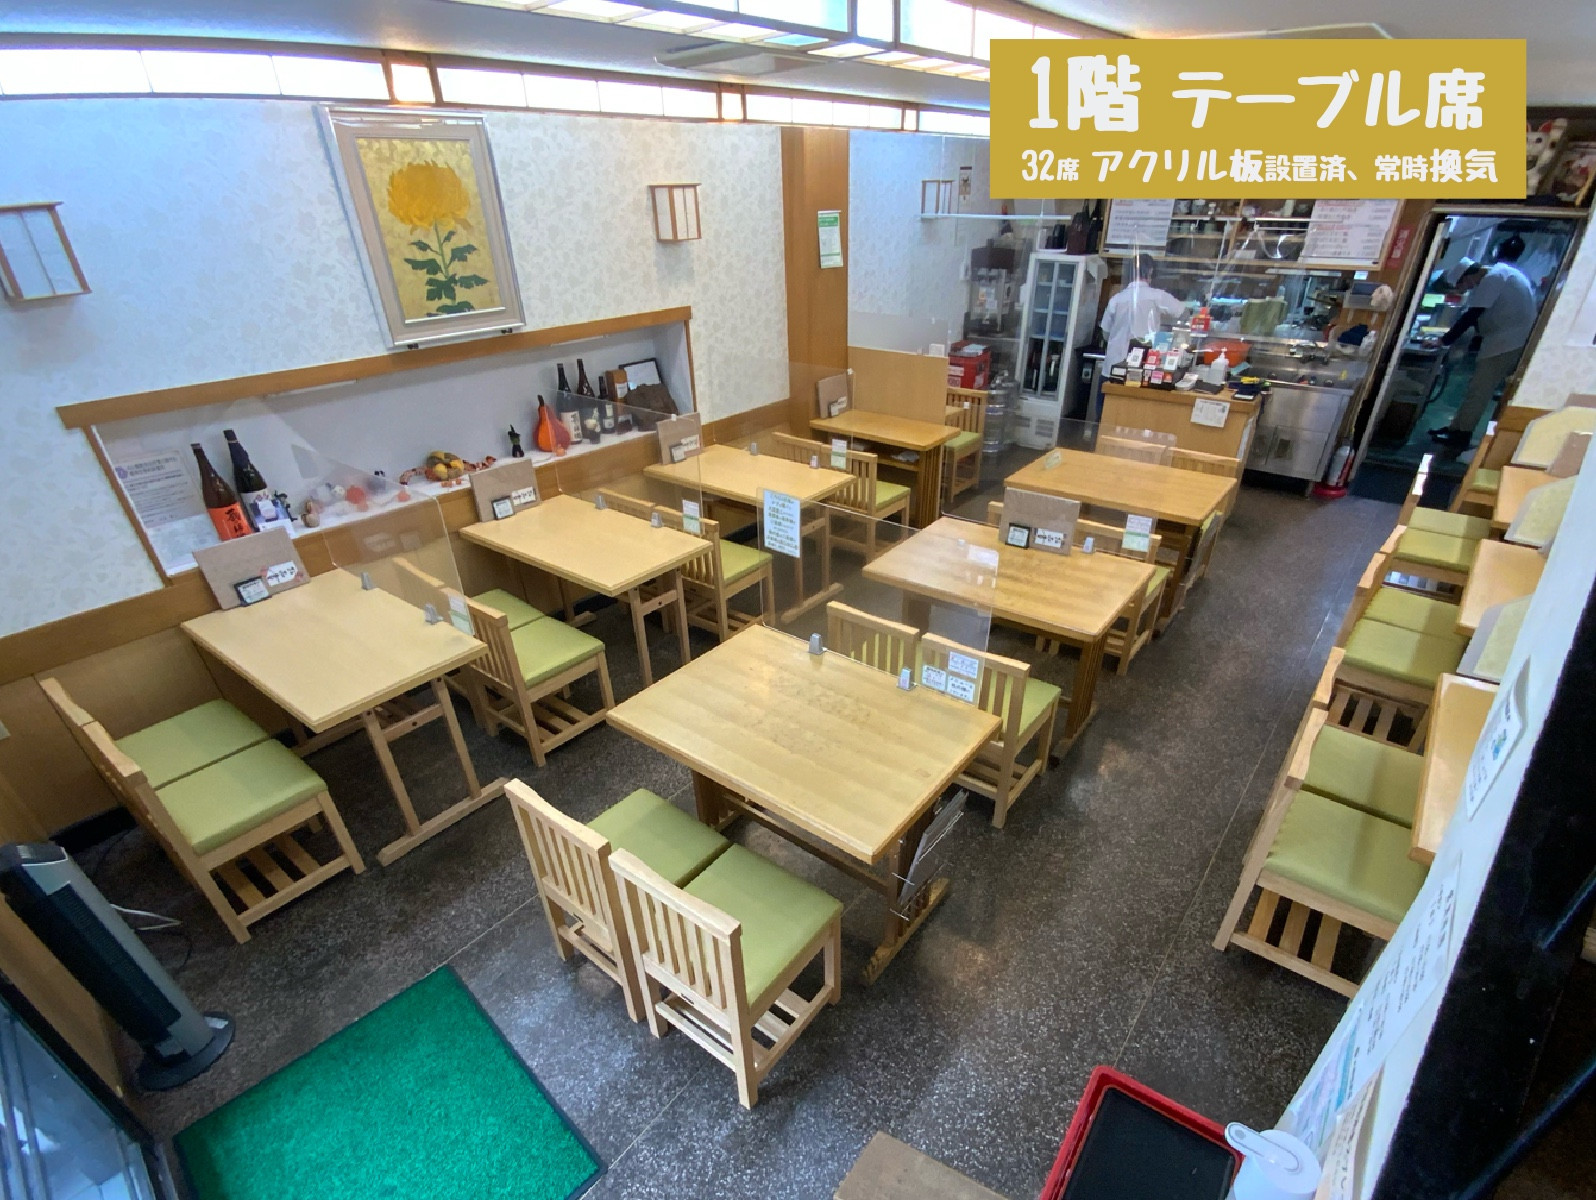 都立大学駅「そば処 大菊総本店」のホームページです。